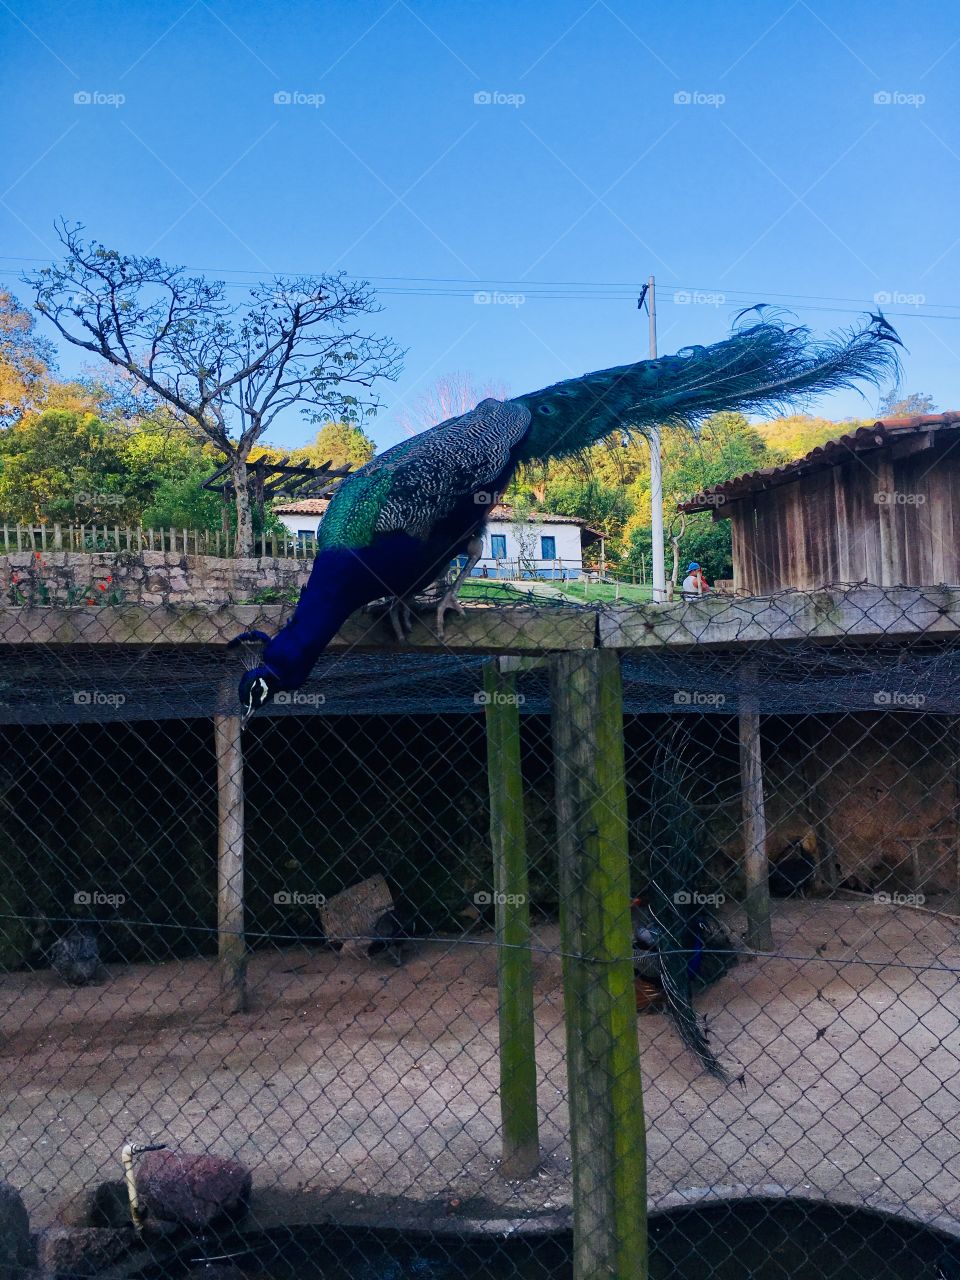 2 de 4 - o pavão está querendo pular para se mostrar às pessoas que o visitam (passeio na Fazenda do Chocolate, Itu/SP - Brasil)